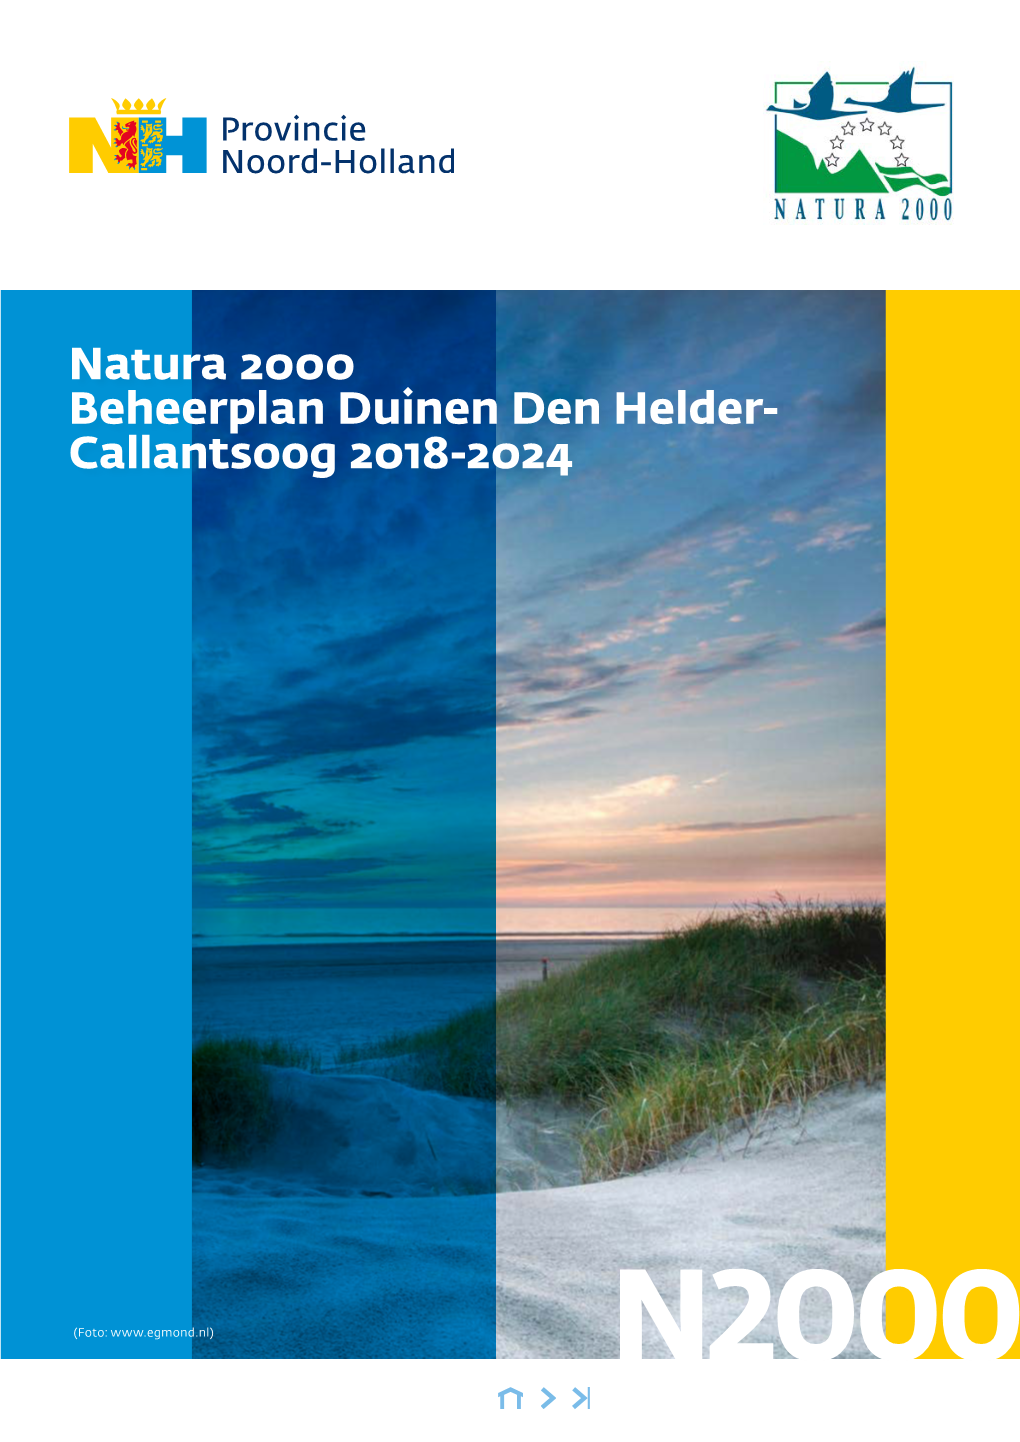 Beheerplan Duinen Den Helder-Callantsoog | Provincie Noord-Holland | 2